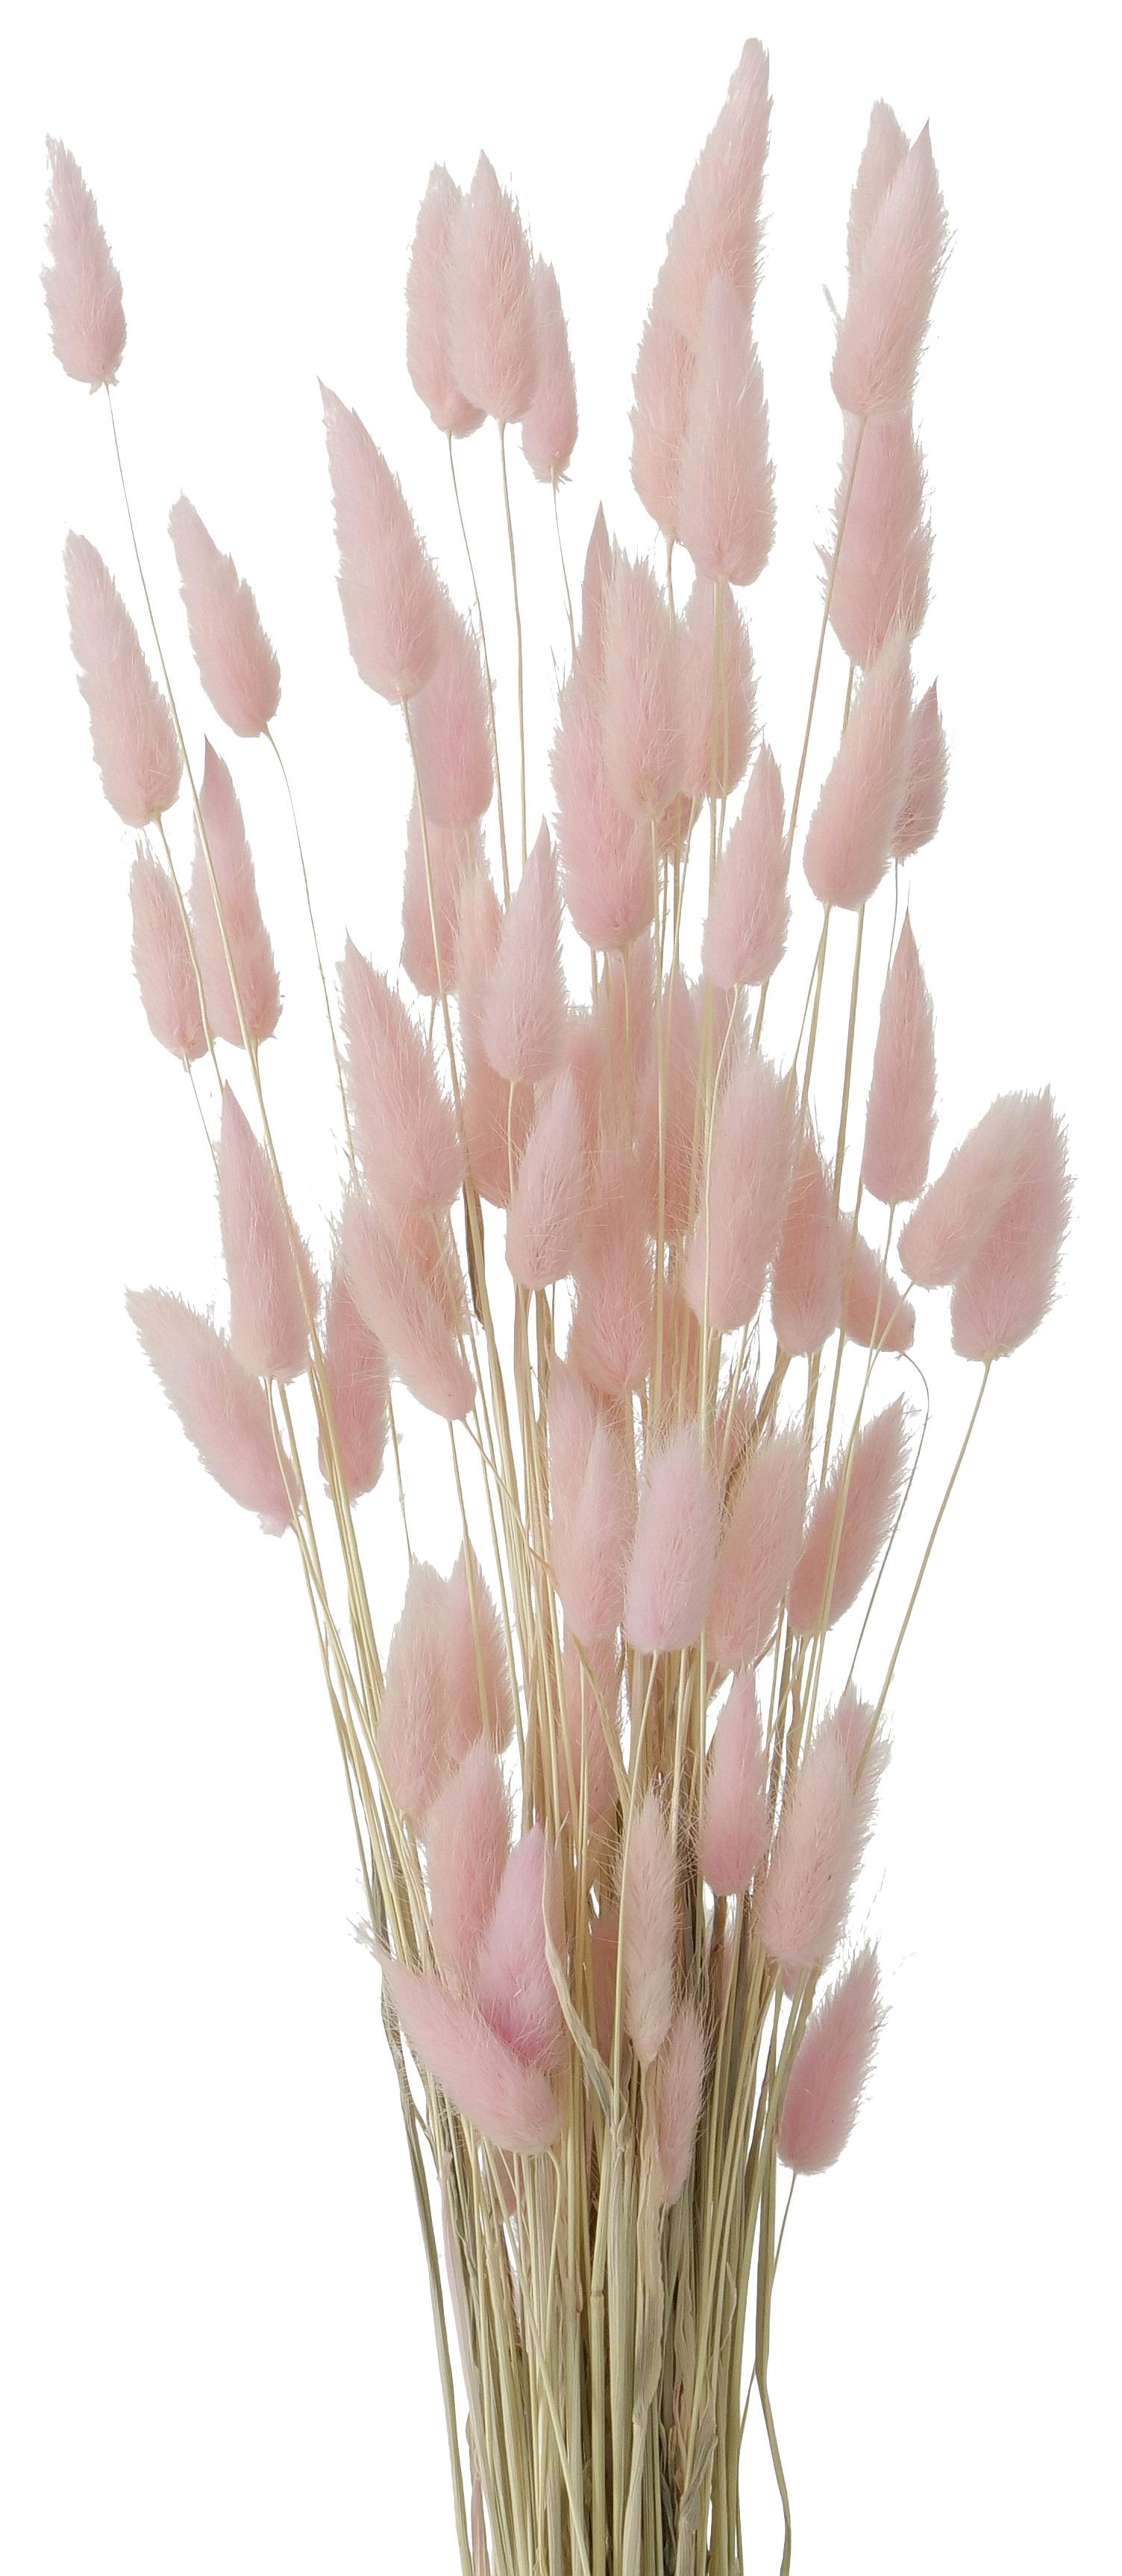 Plantă artificială Samtgras - roz/culoare natur, Modern, materiale naturale (60cm)